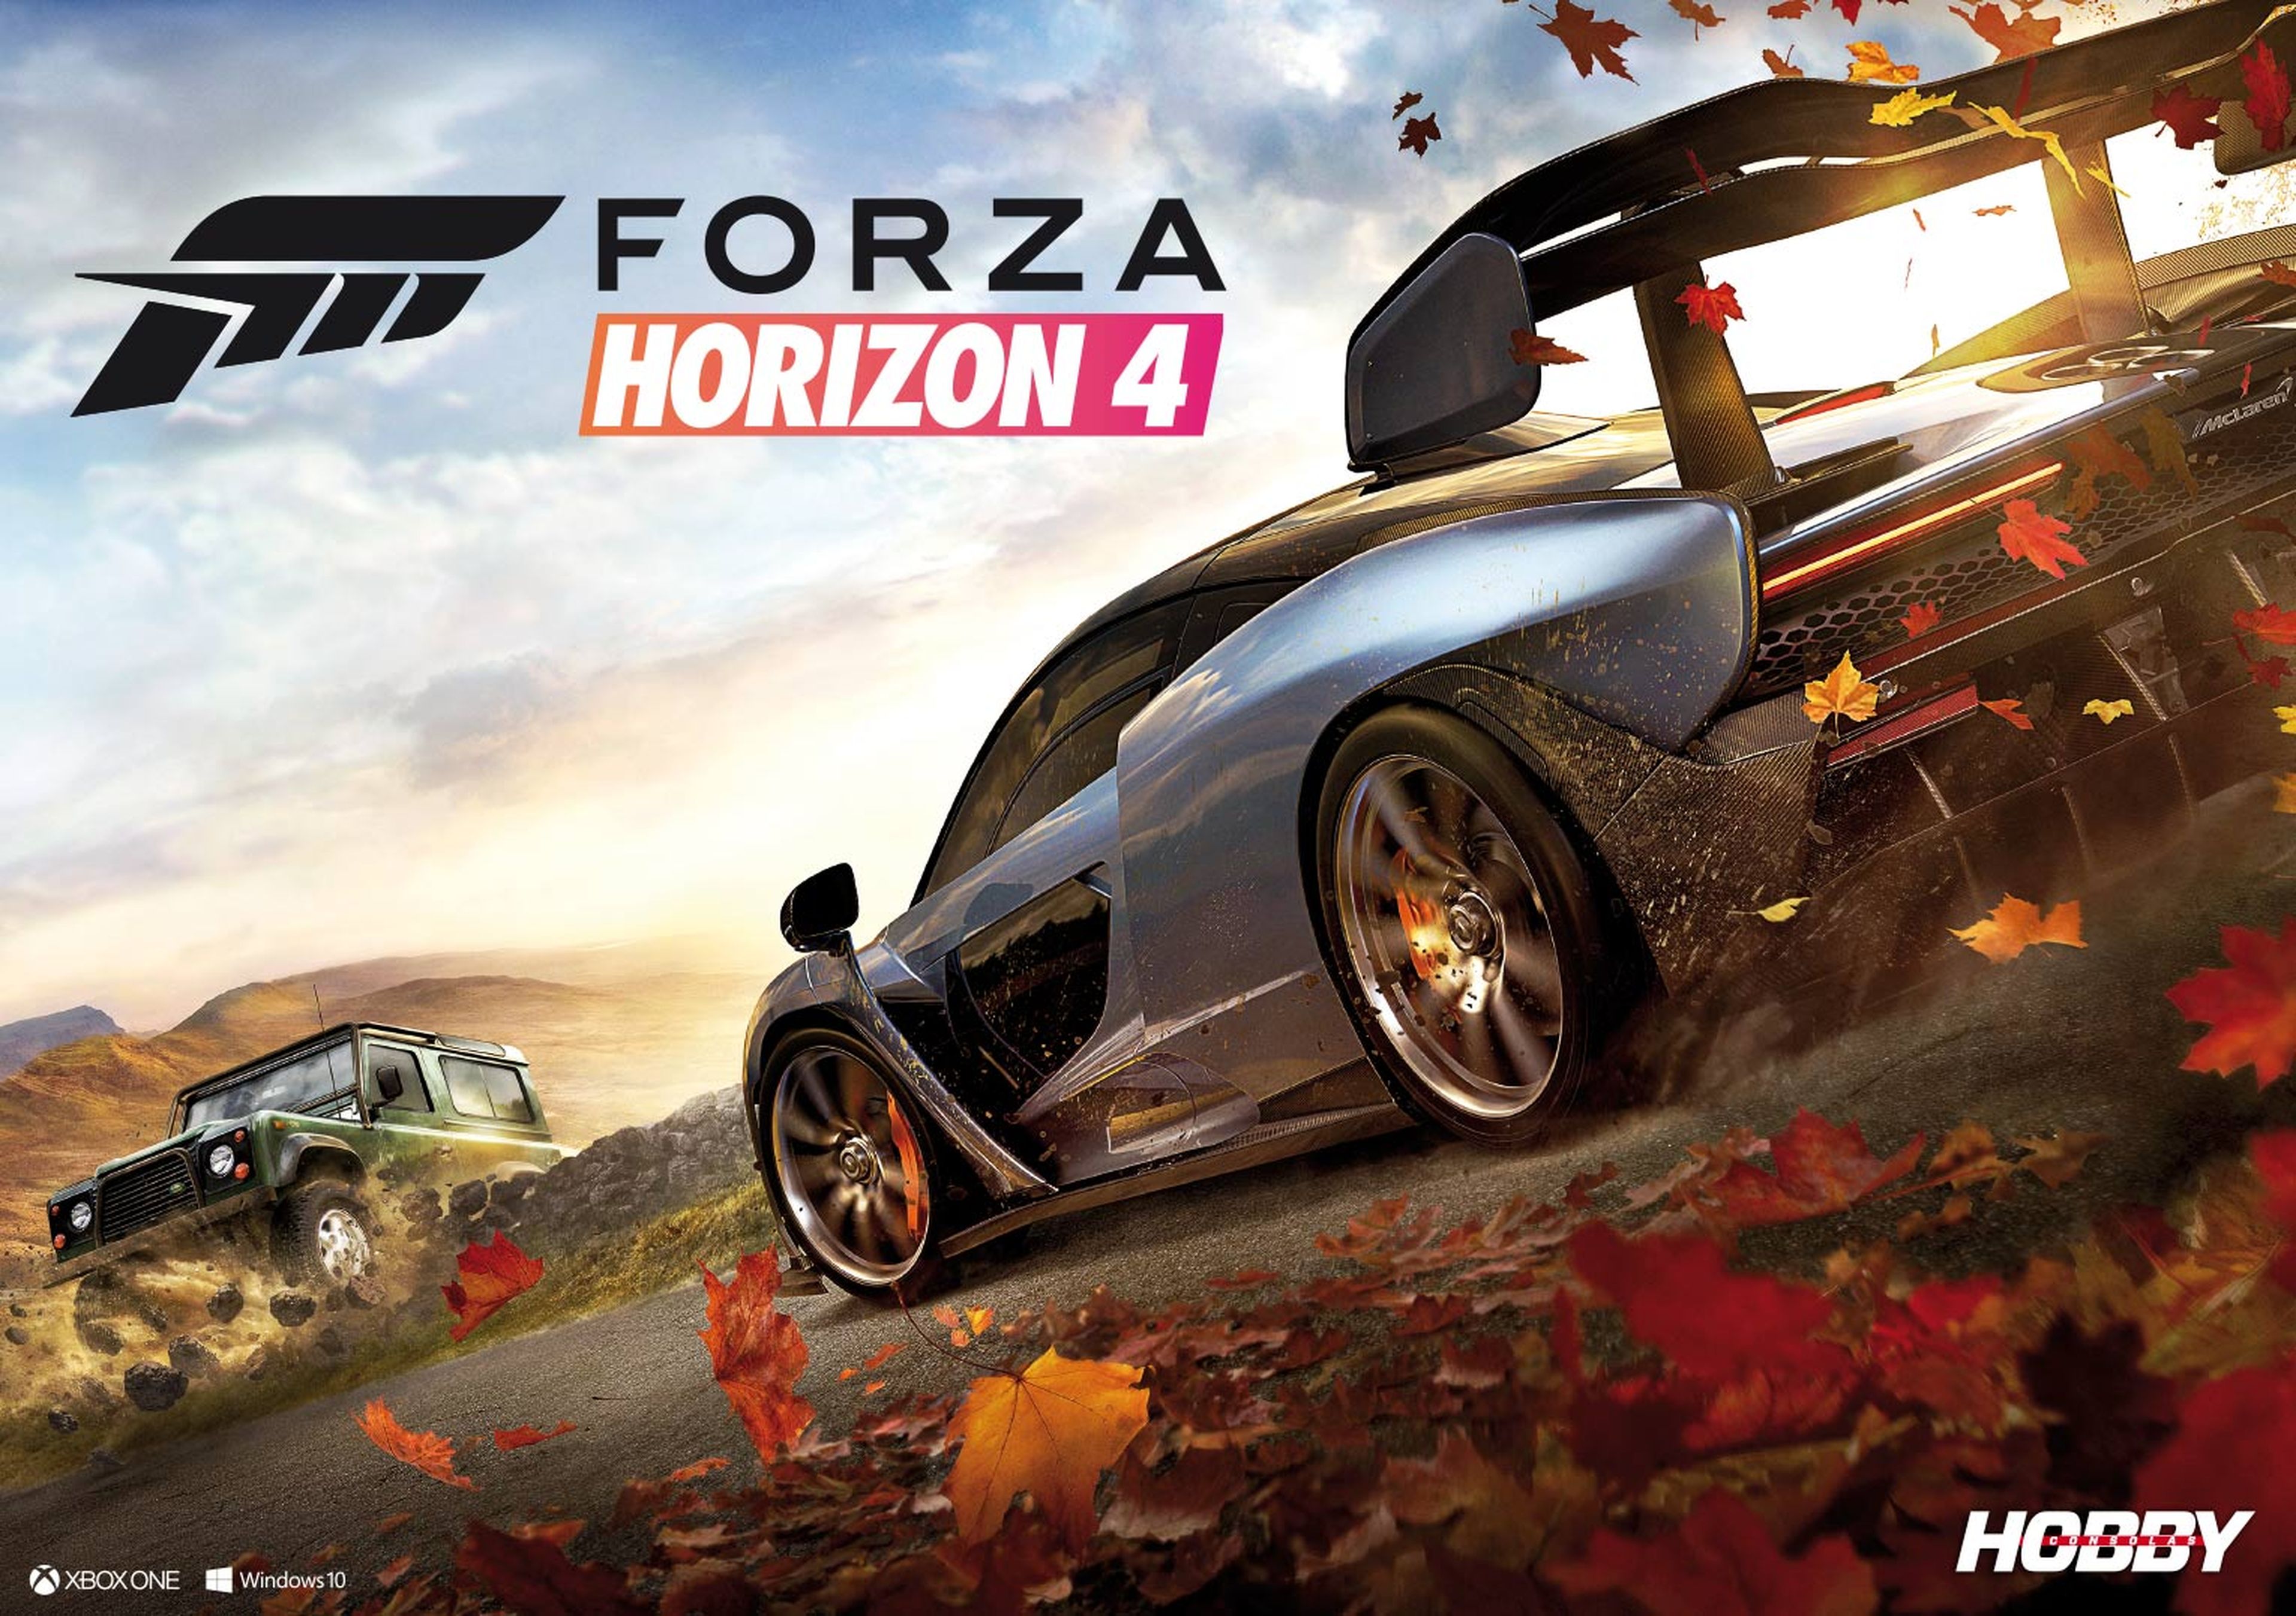 Hobby Consolas 327, a la venta con pósters de Assassin's Creed Odyssey y Forza Horizon 4